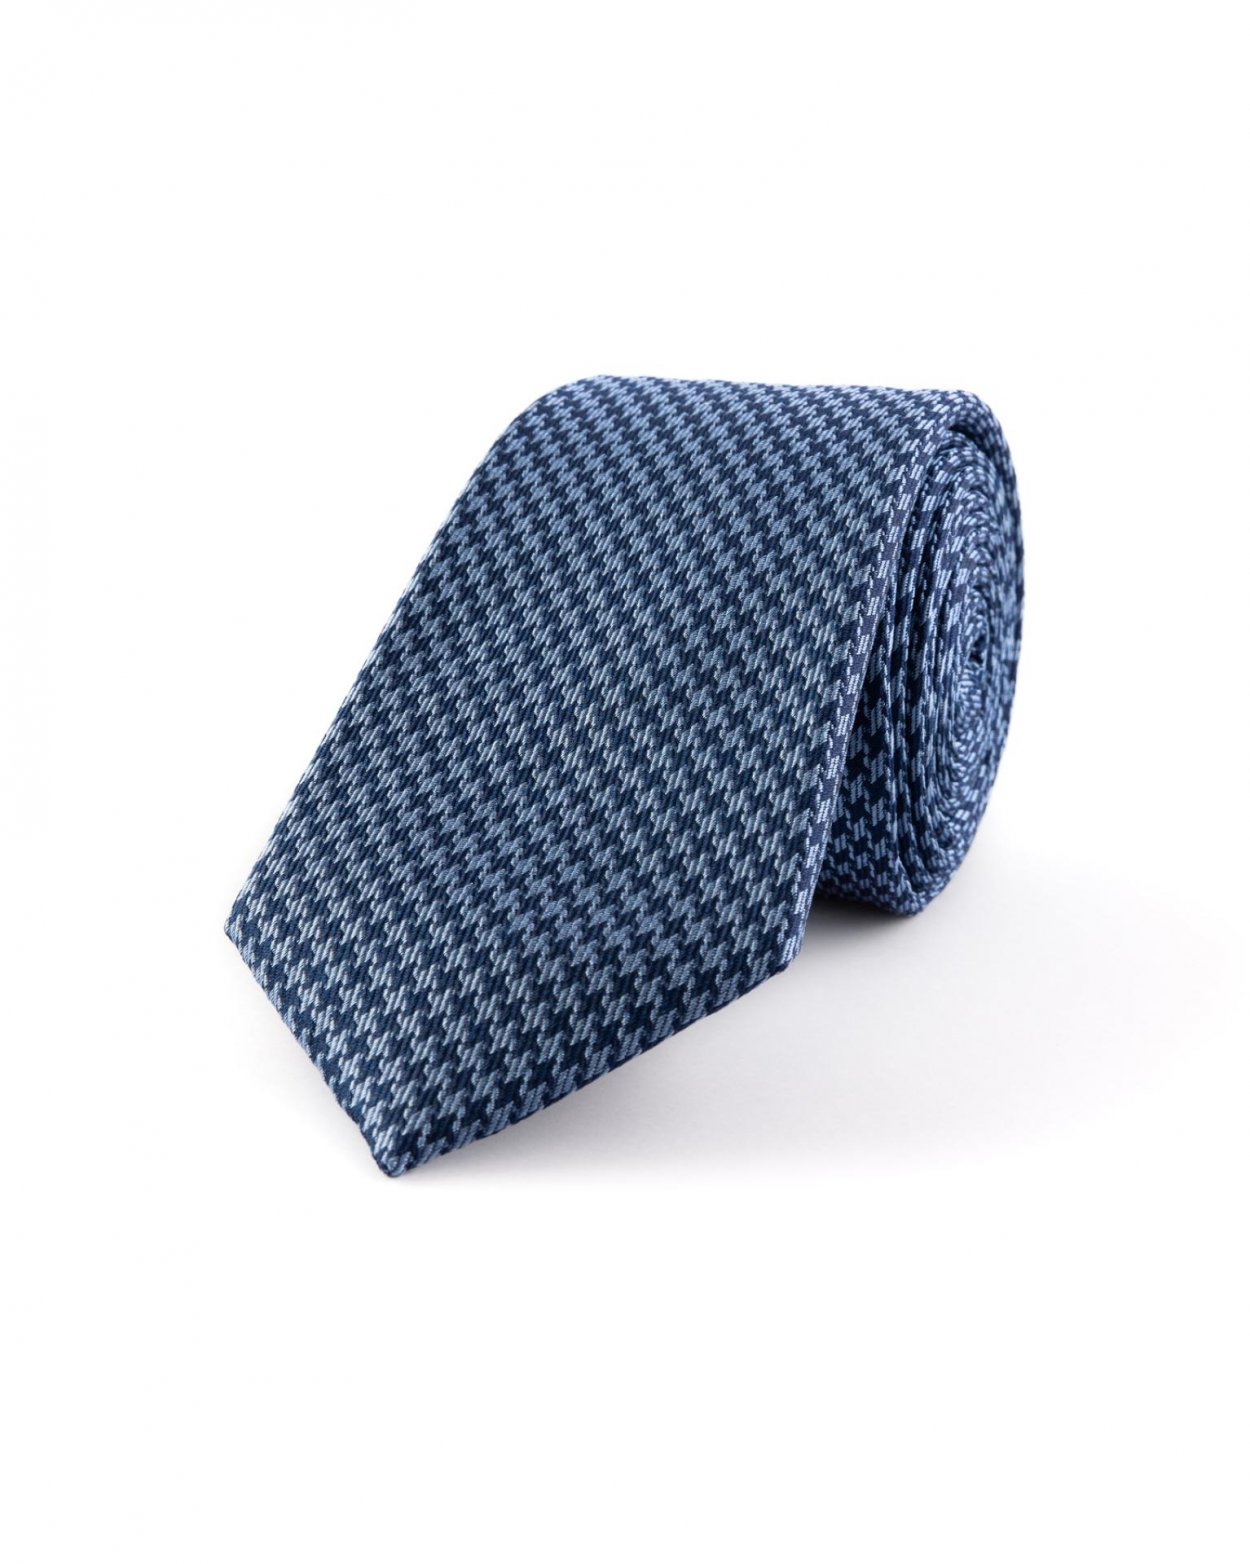 Modrá hedvábná kravata s jemným vzorem